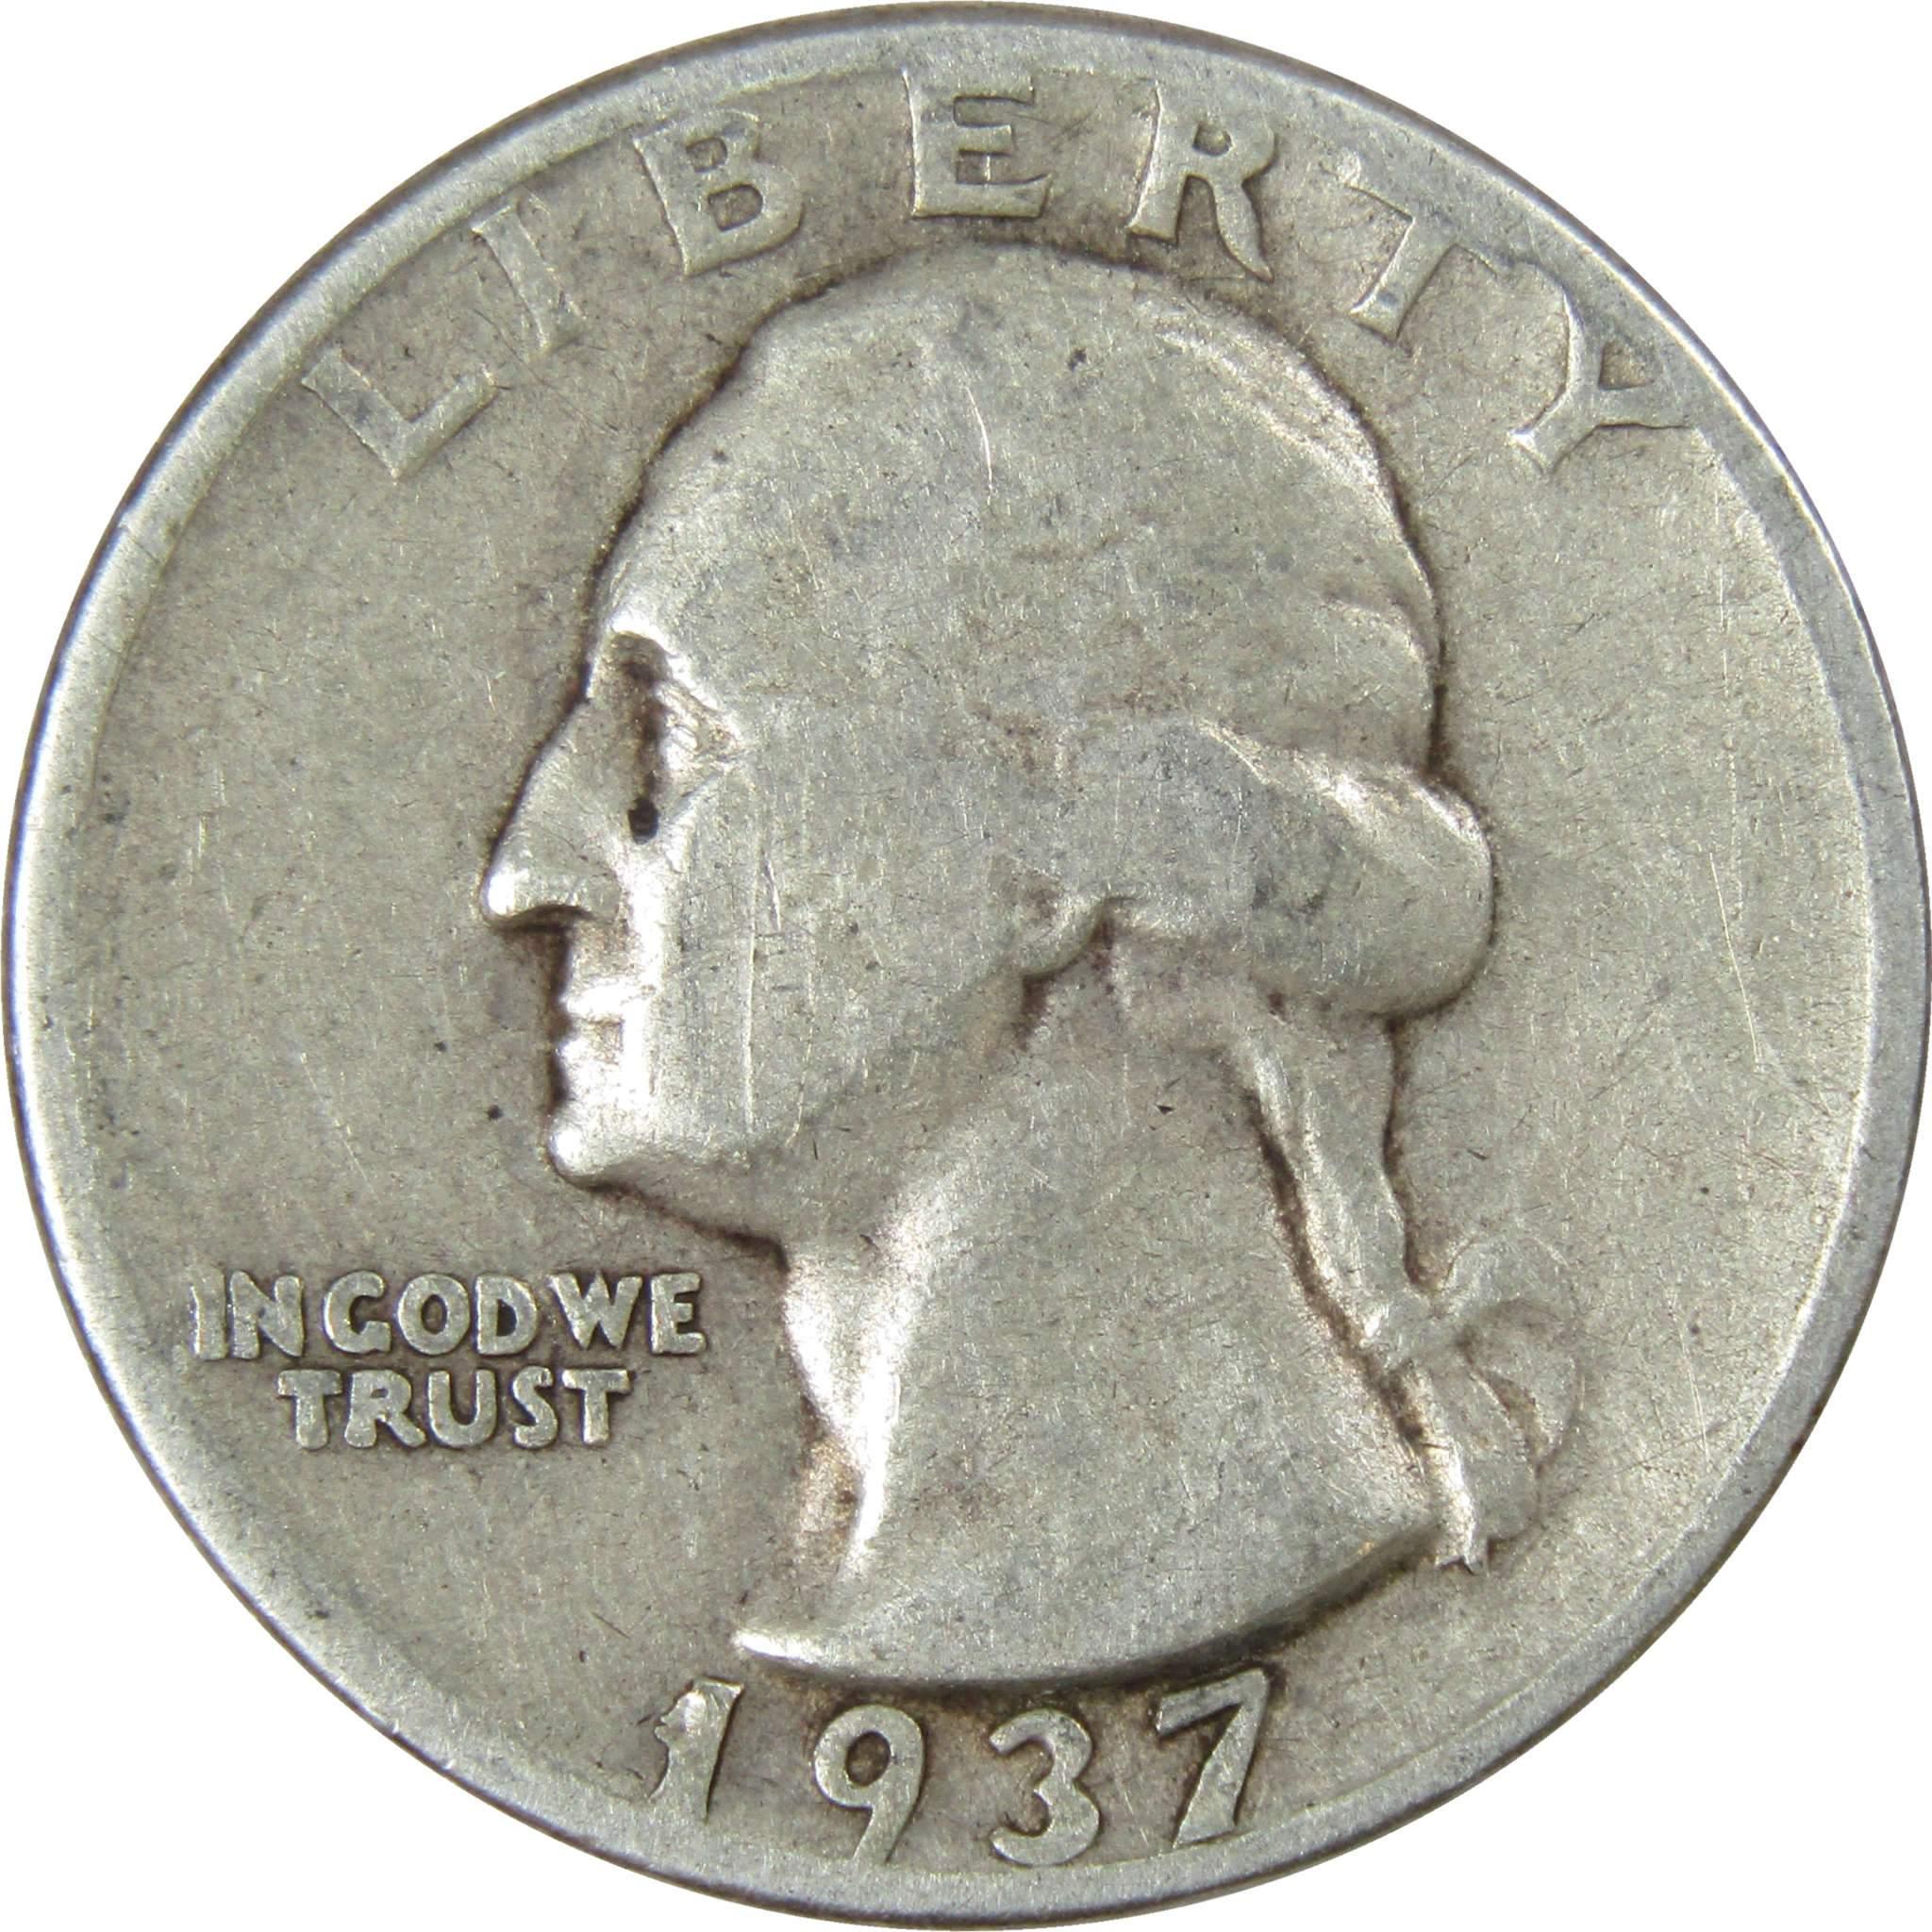 1937 D Washington Quarter AG About Good 90% Silver 25c US Coin Collectible